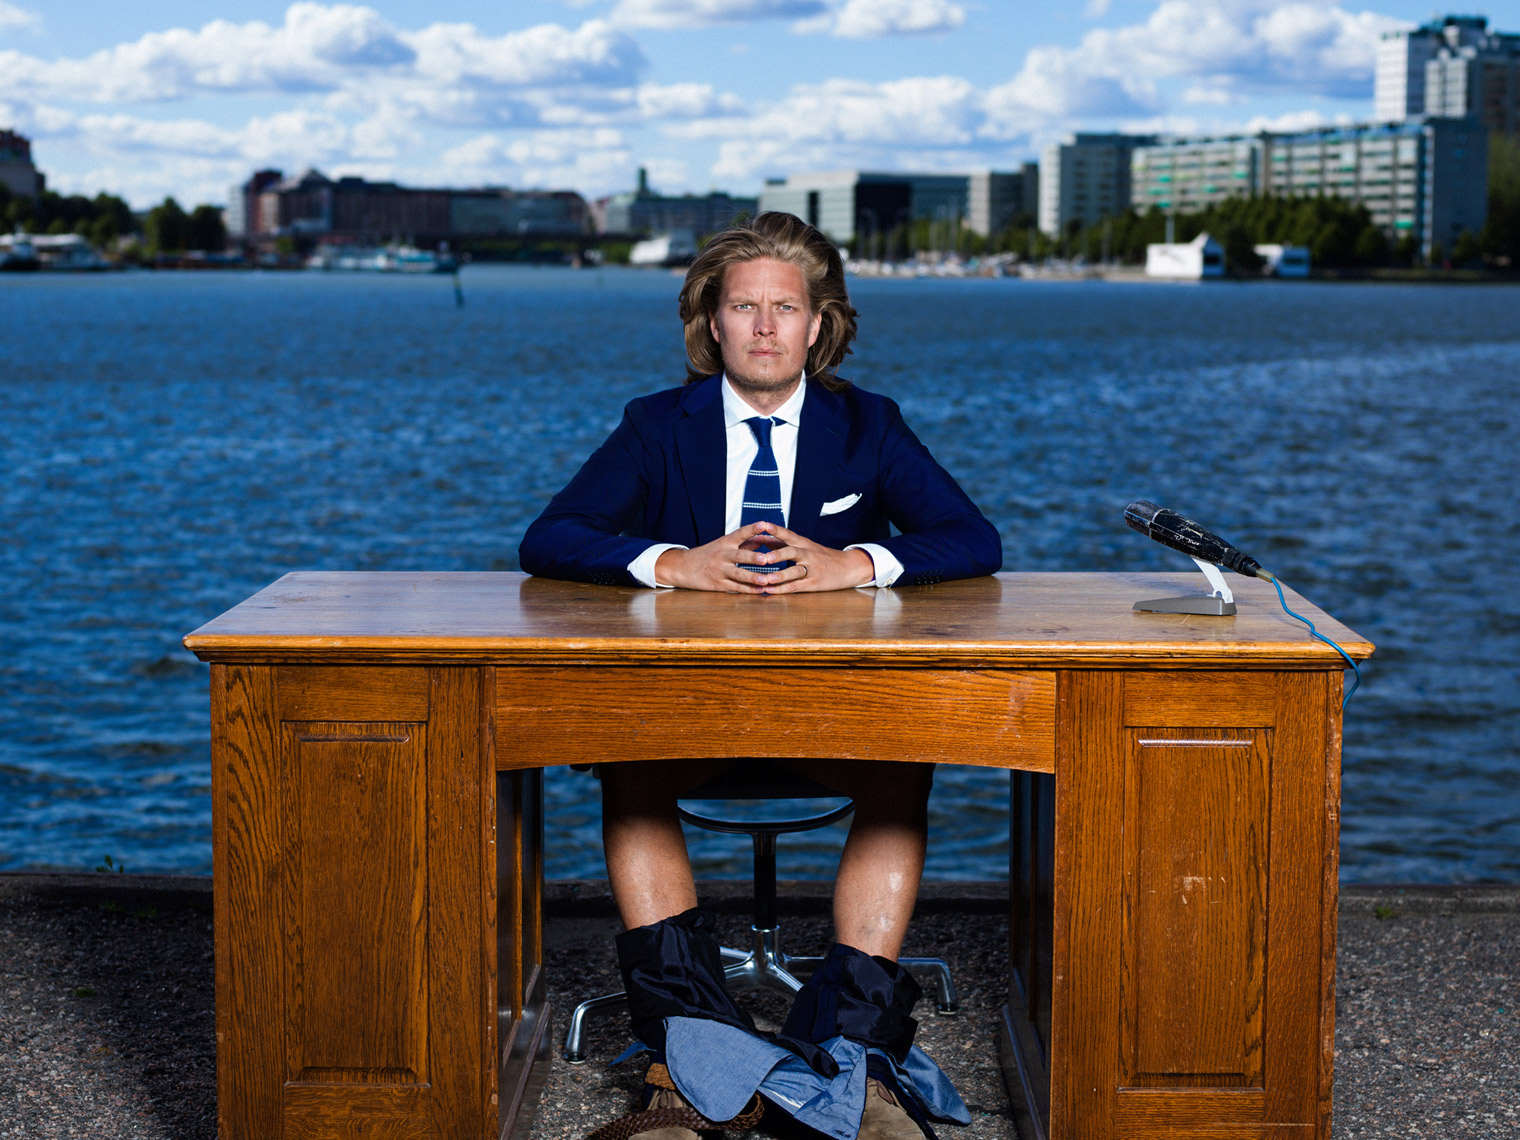 Promo Pictures for YLE Kioski – Kaarle Hurtig // Photographer: Aki-Pekka Sinikoski